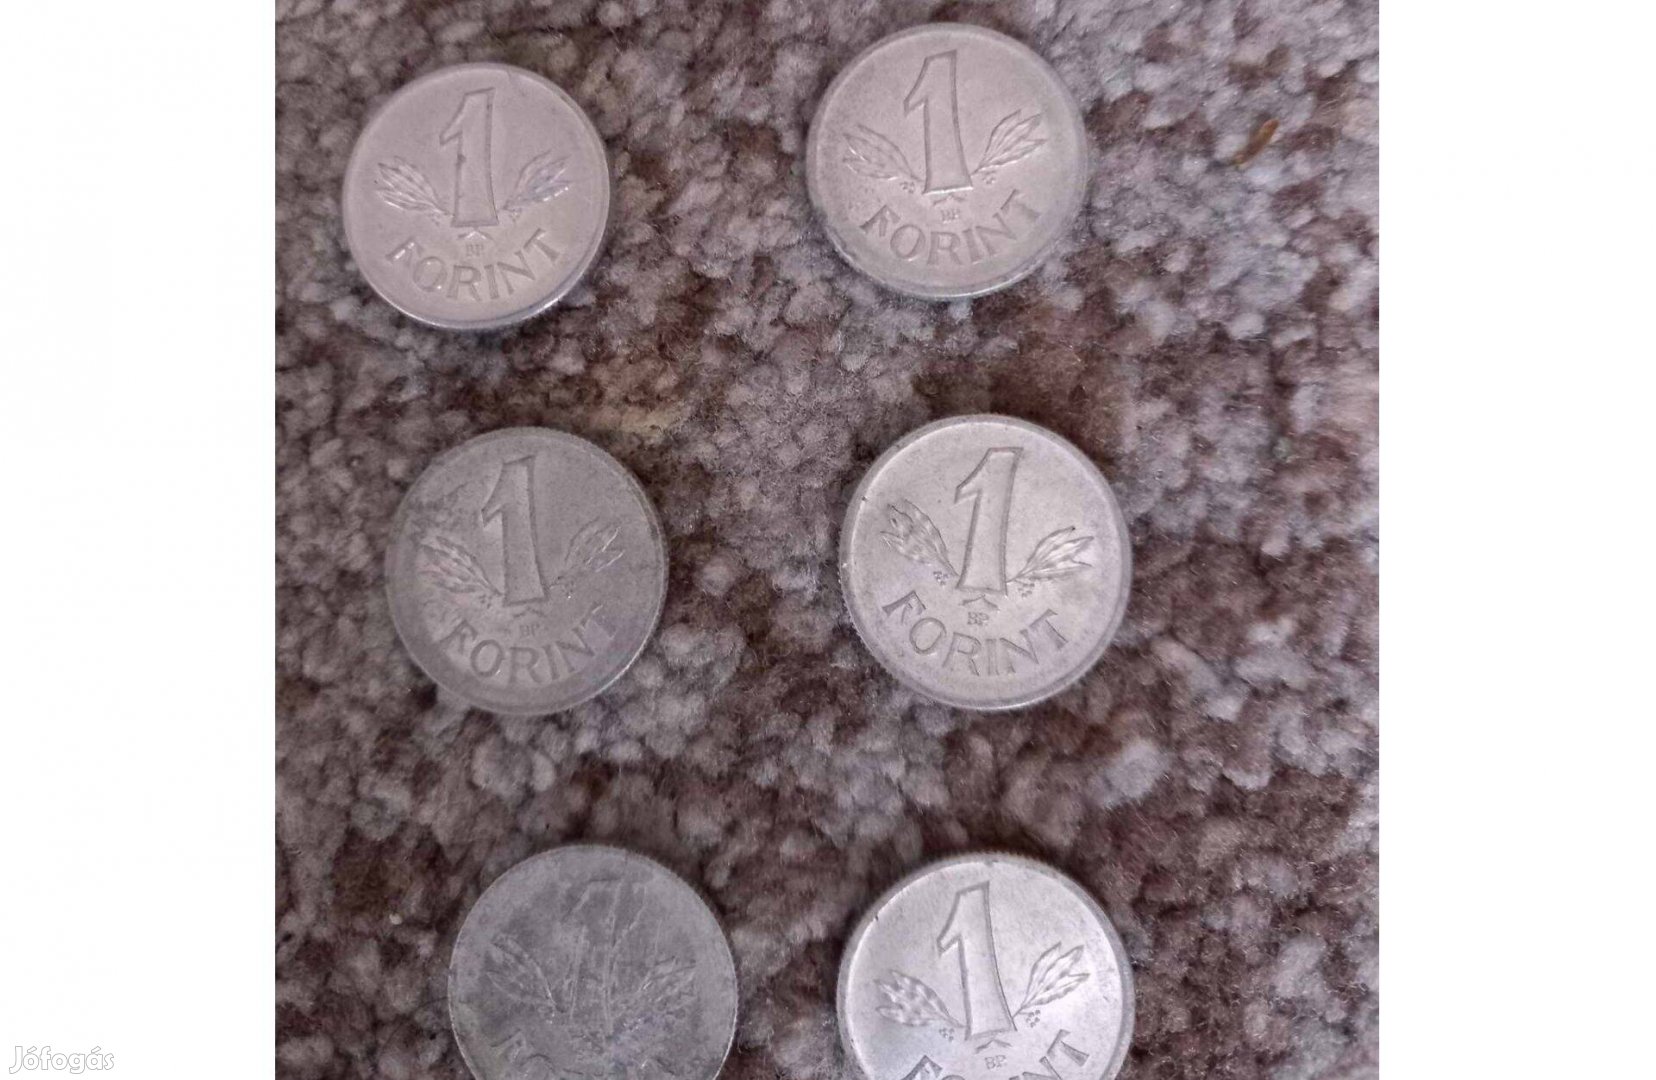 9 db Magyar Népköztársaság feliratú alumínium pénzérme